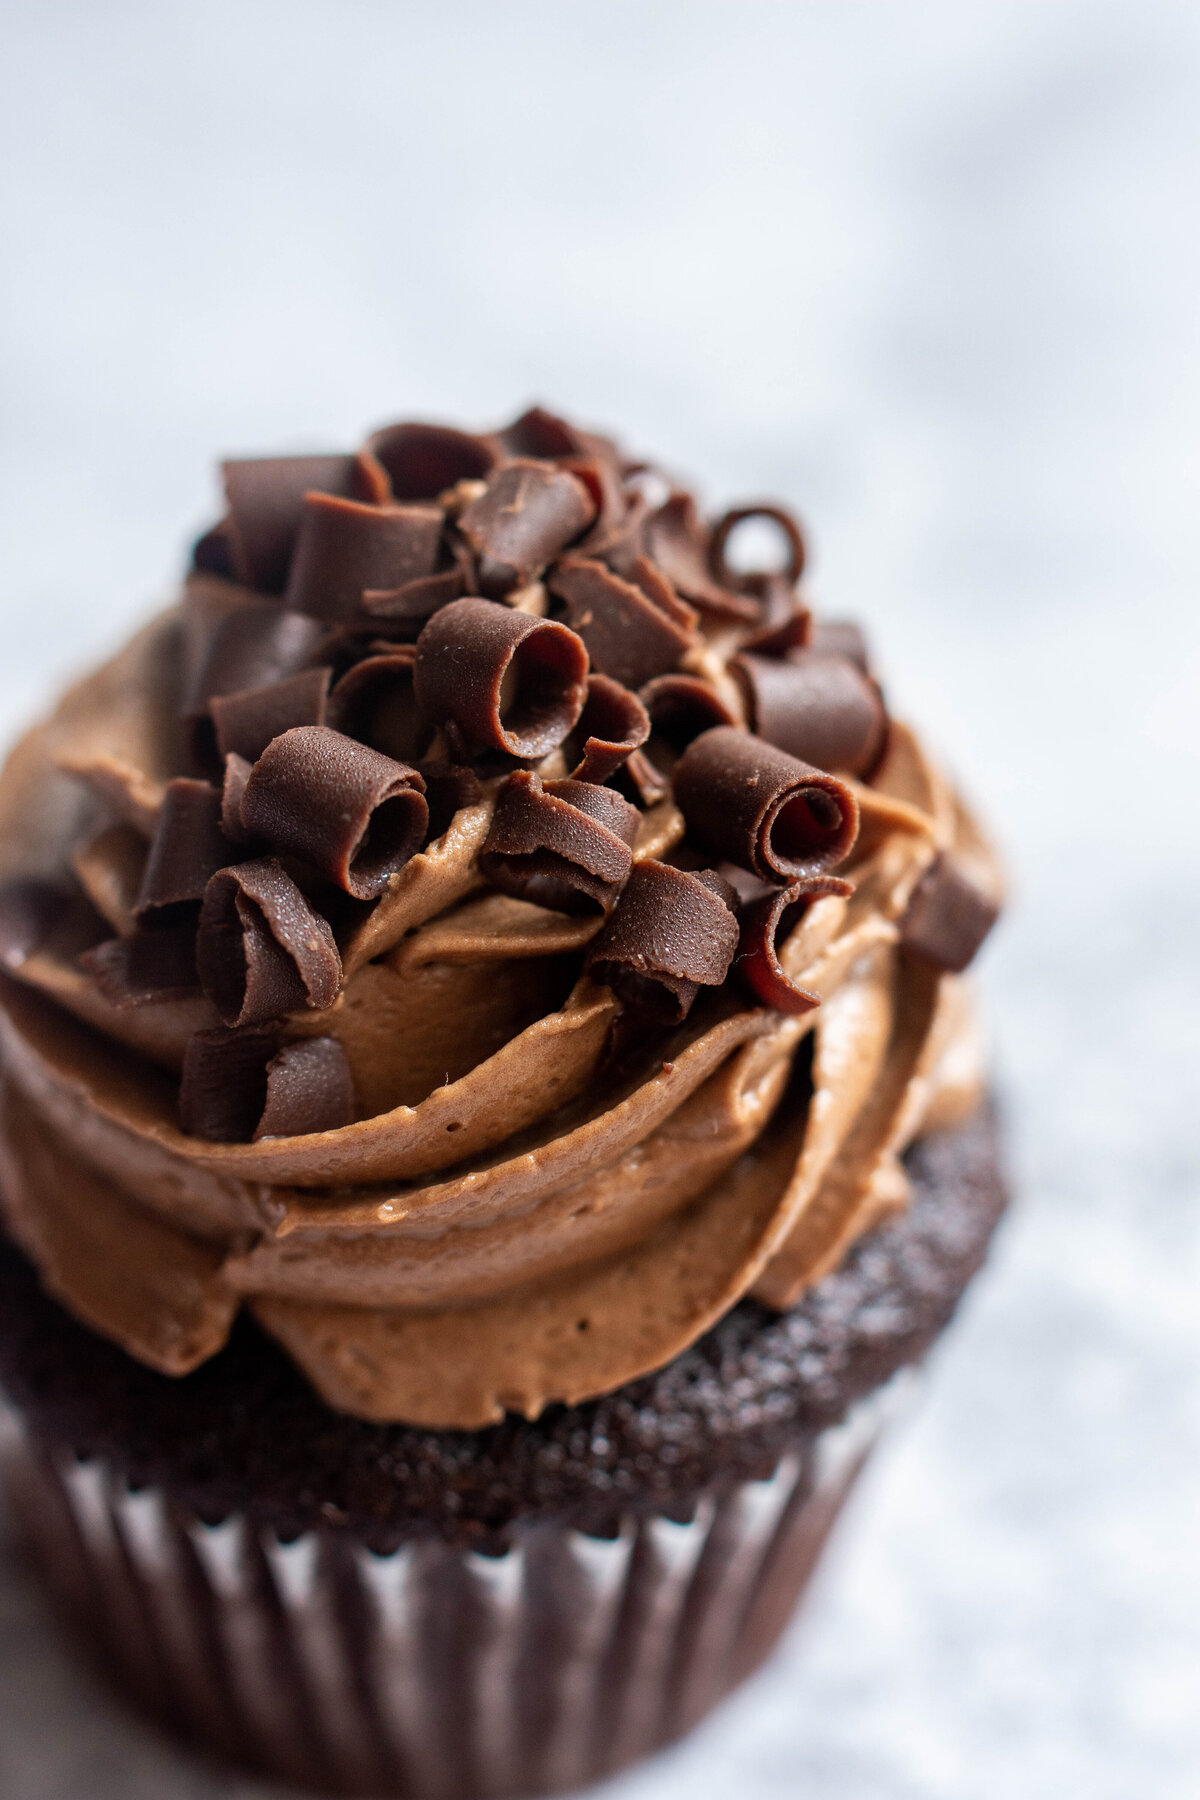 Closeup image of a chocolate cupcake